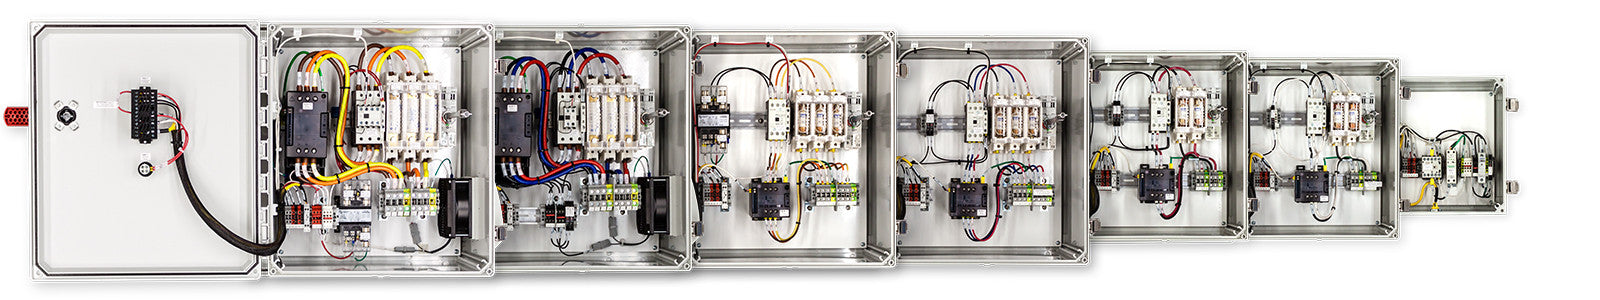 480 VAC Temperature Control Panels